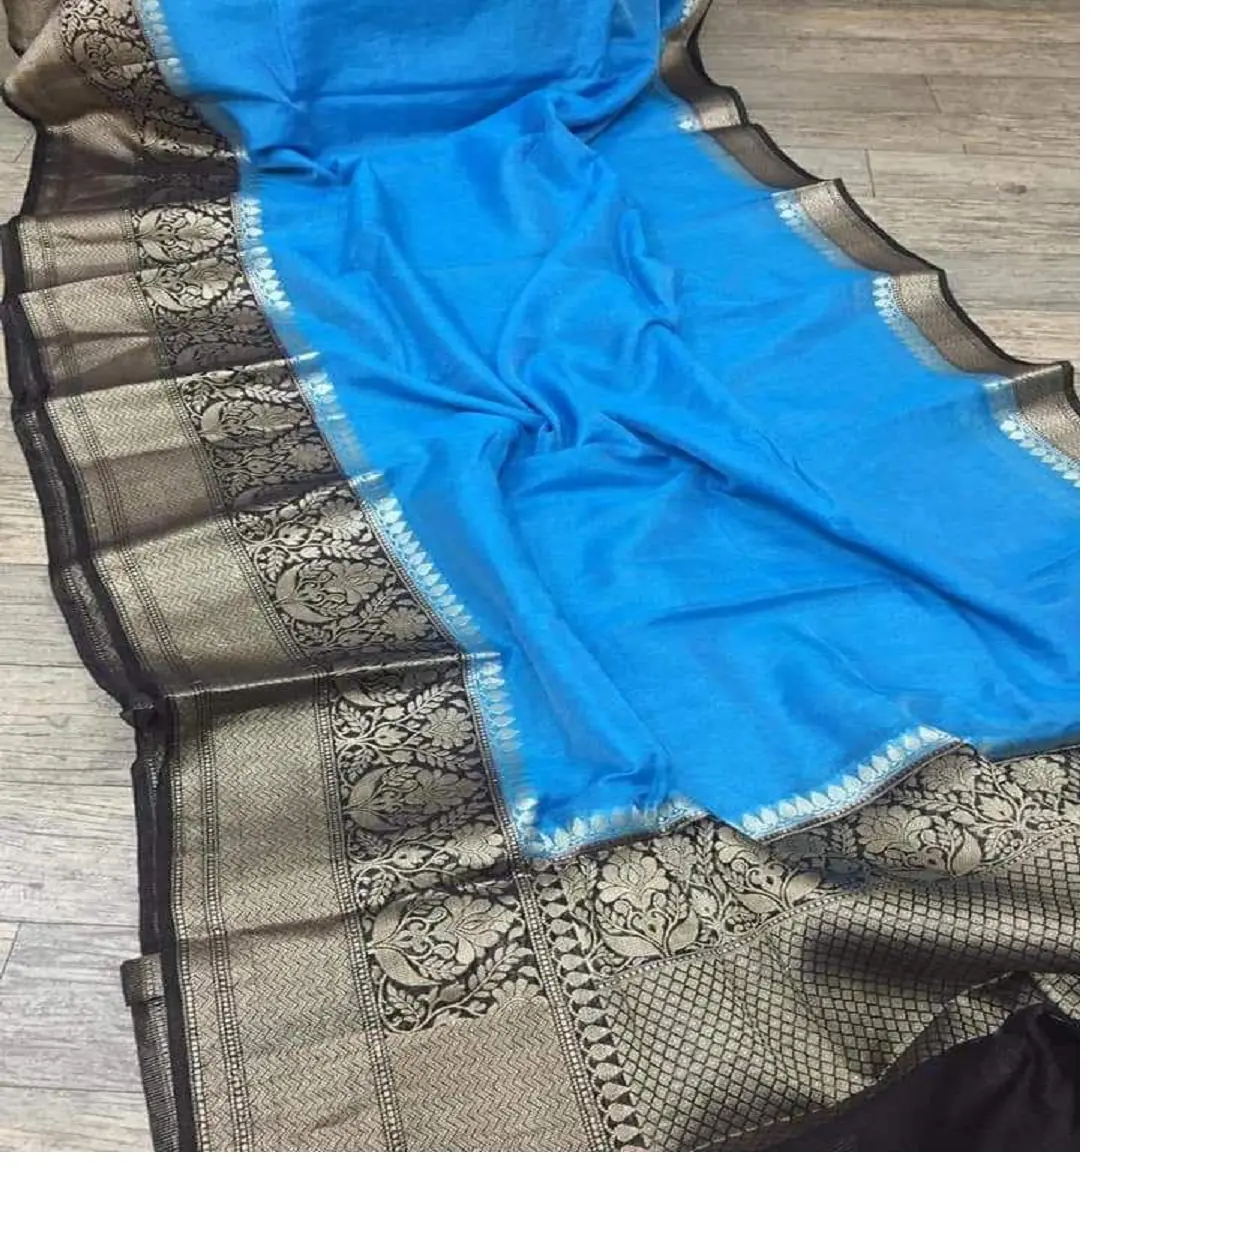 Personalizado feito em oceano cor azul brocado seda sarees feitos com ouro zari fronteiras para saree e indiano têxtil loja de suprimentos